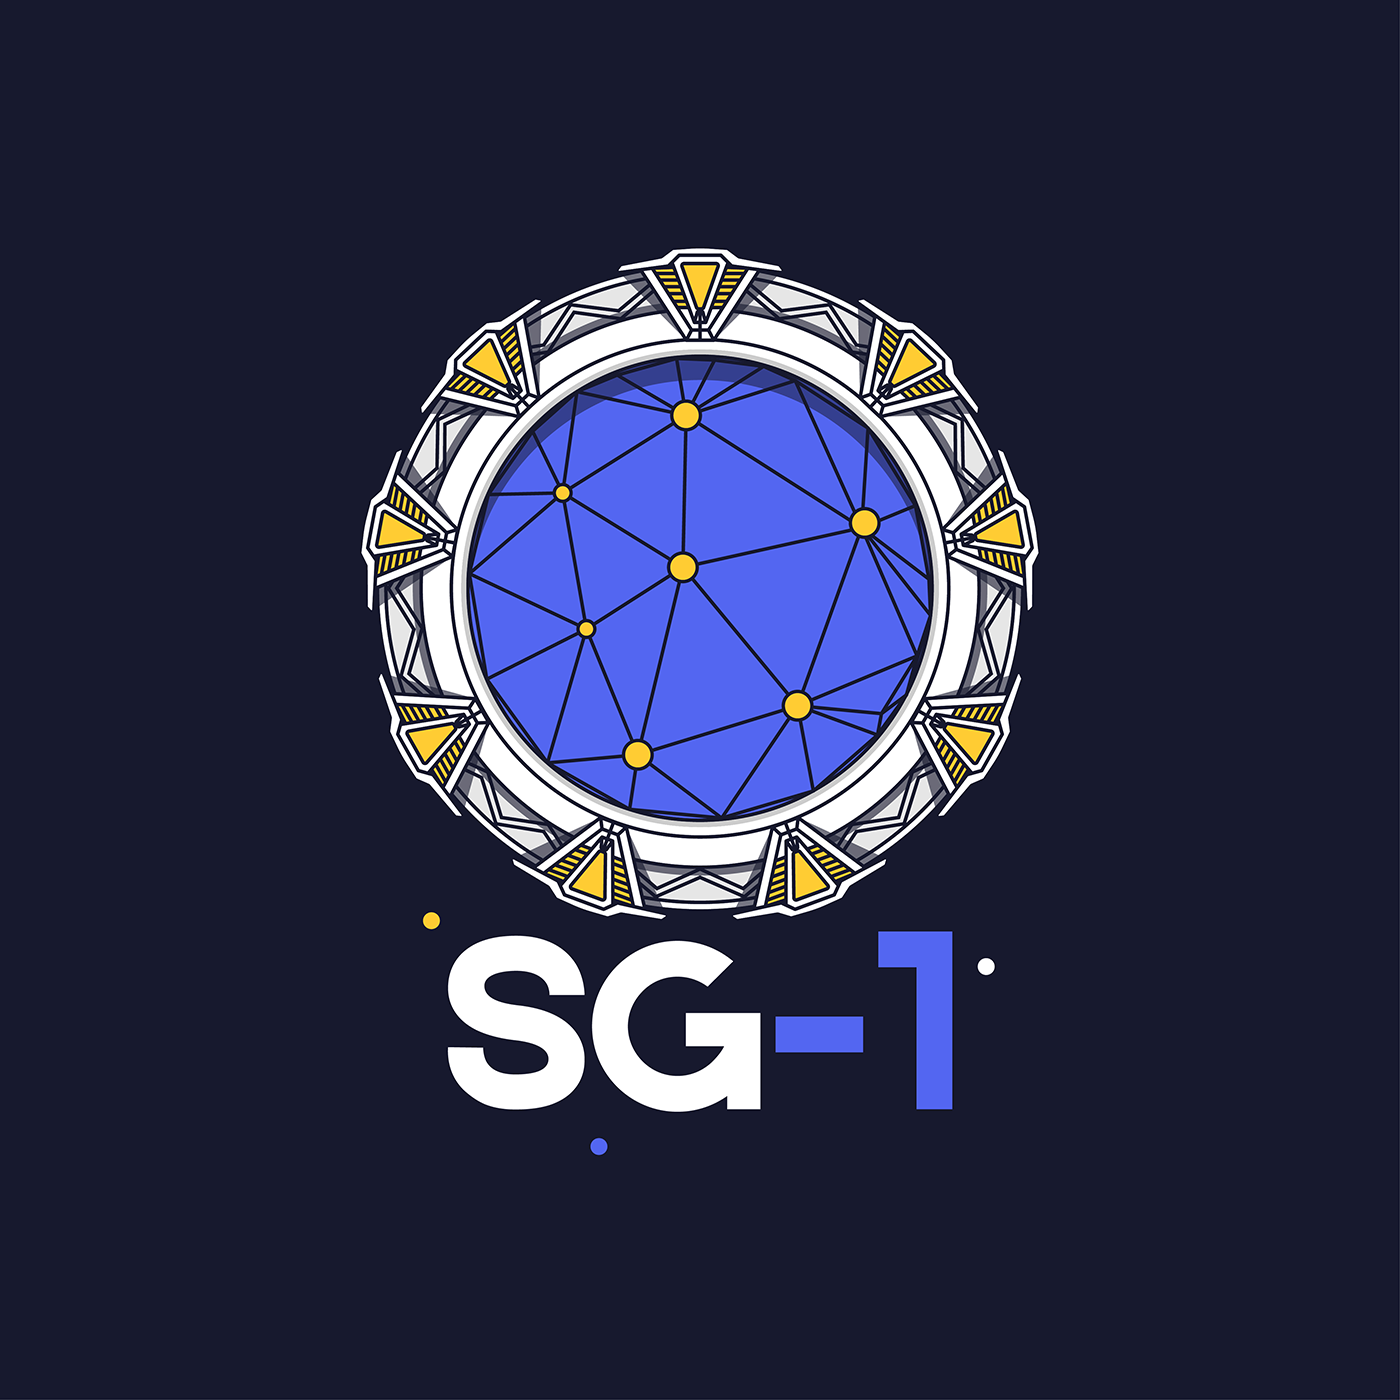 SG-1 logo